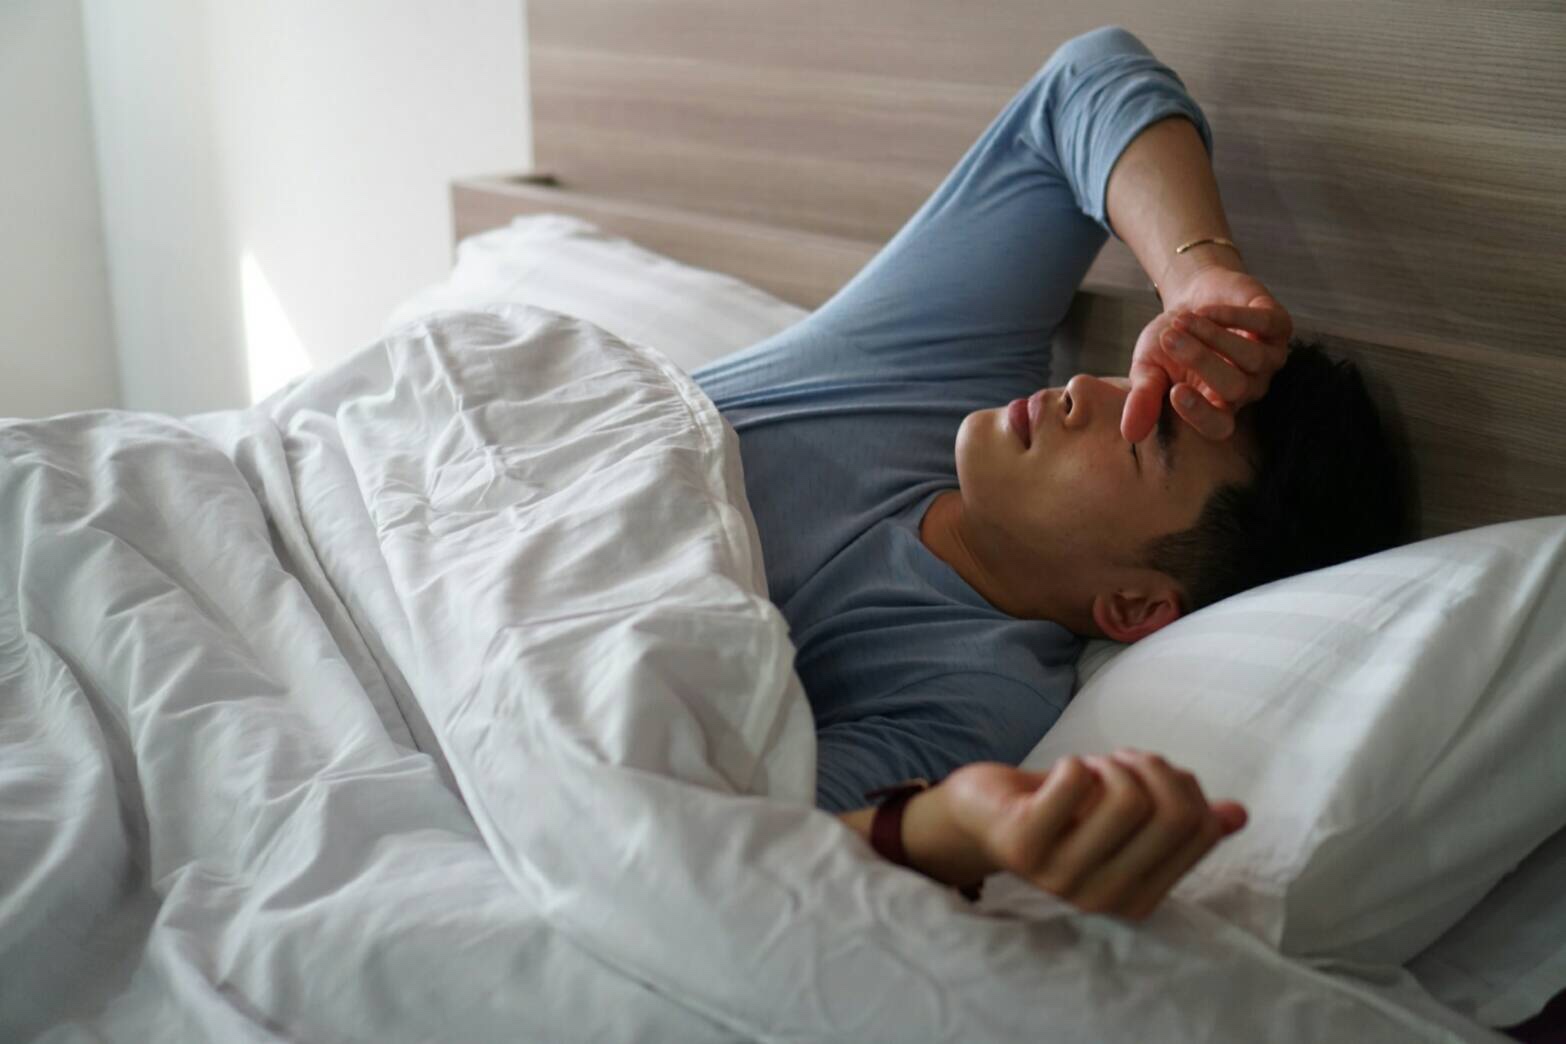 วิธีแก้การนอนกรนผู้ชาย, นอนกรน, เลเซอร์แก้นอนกรน, รักษาอาการกรน, เลเซอร์นอนกรน